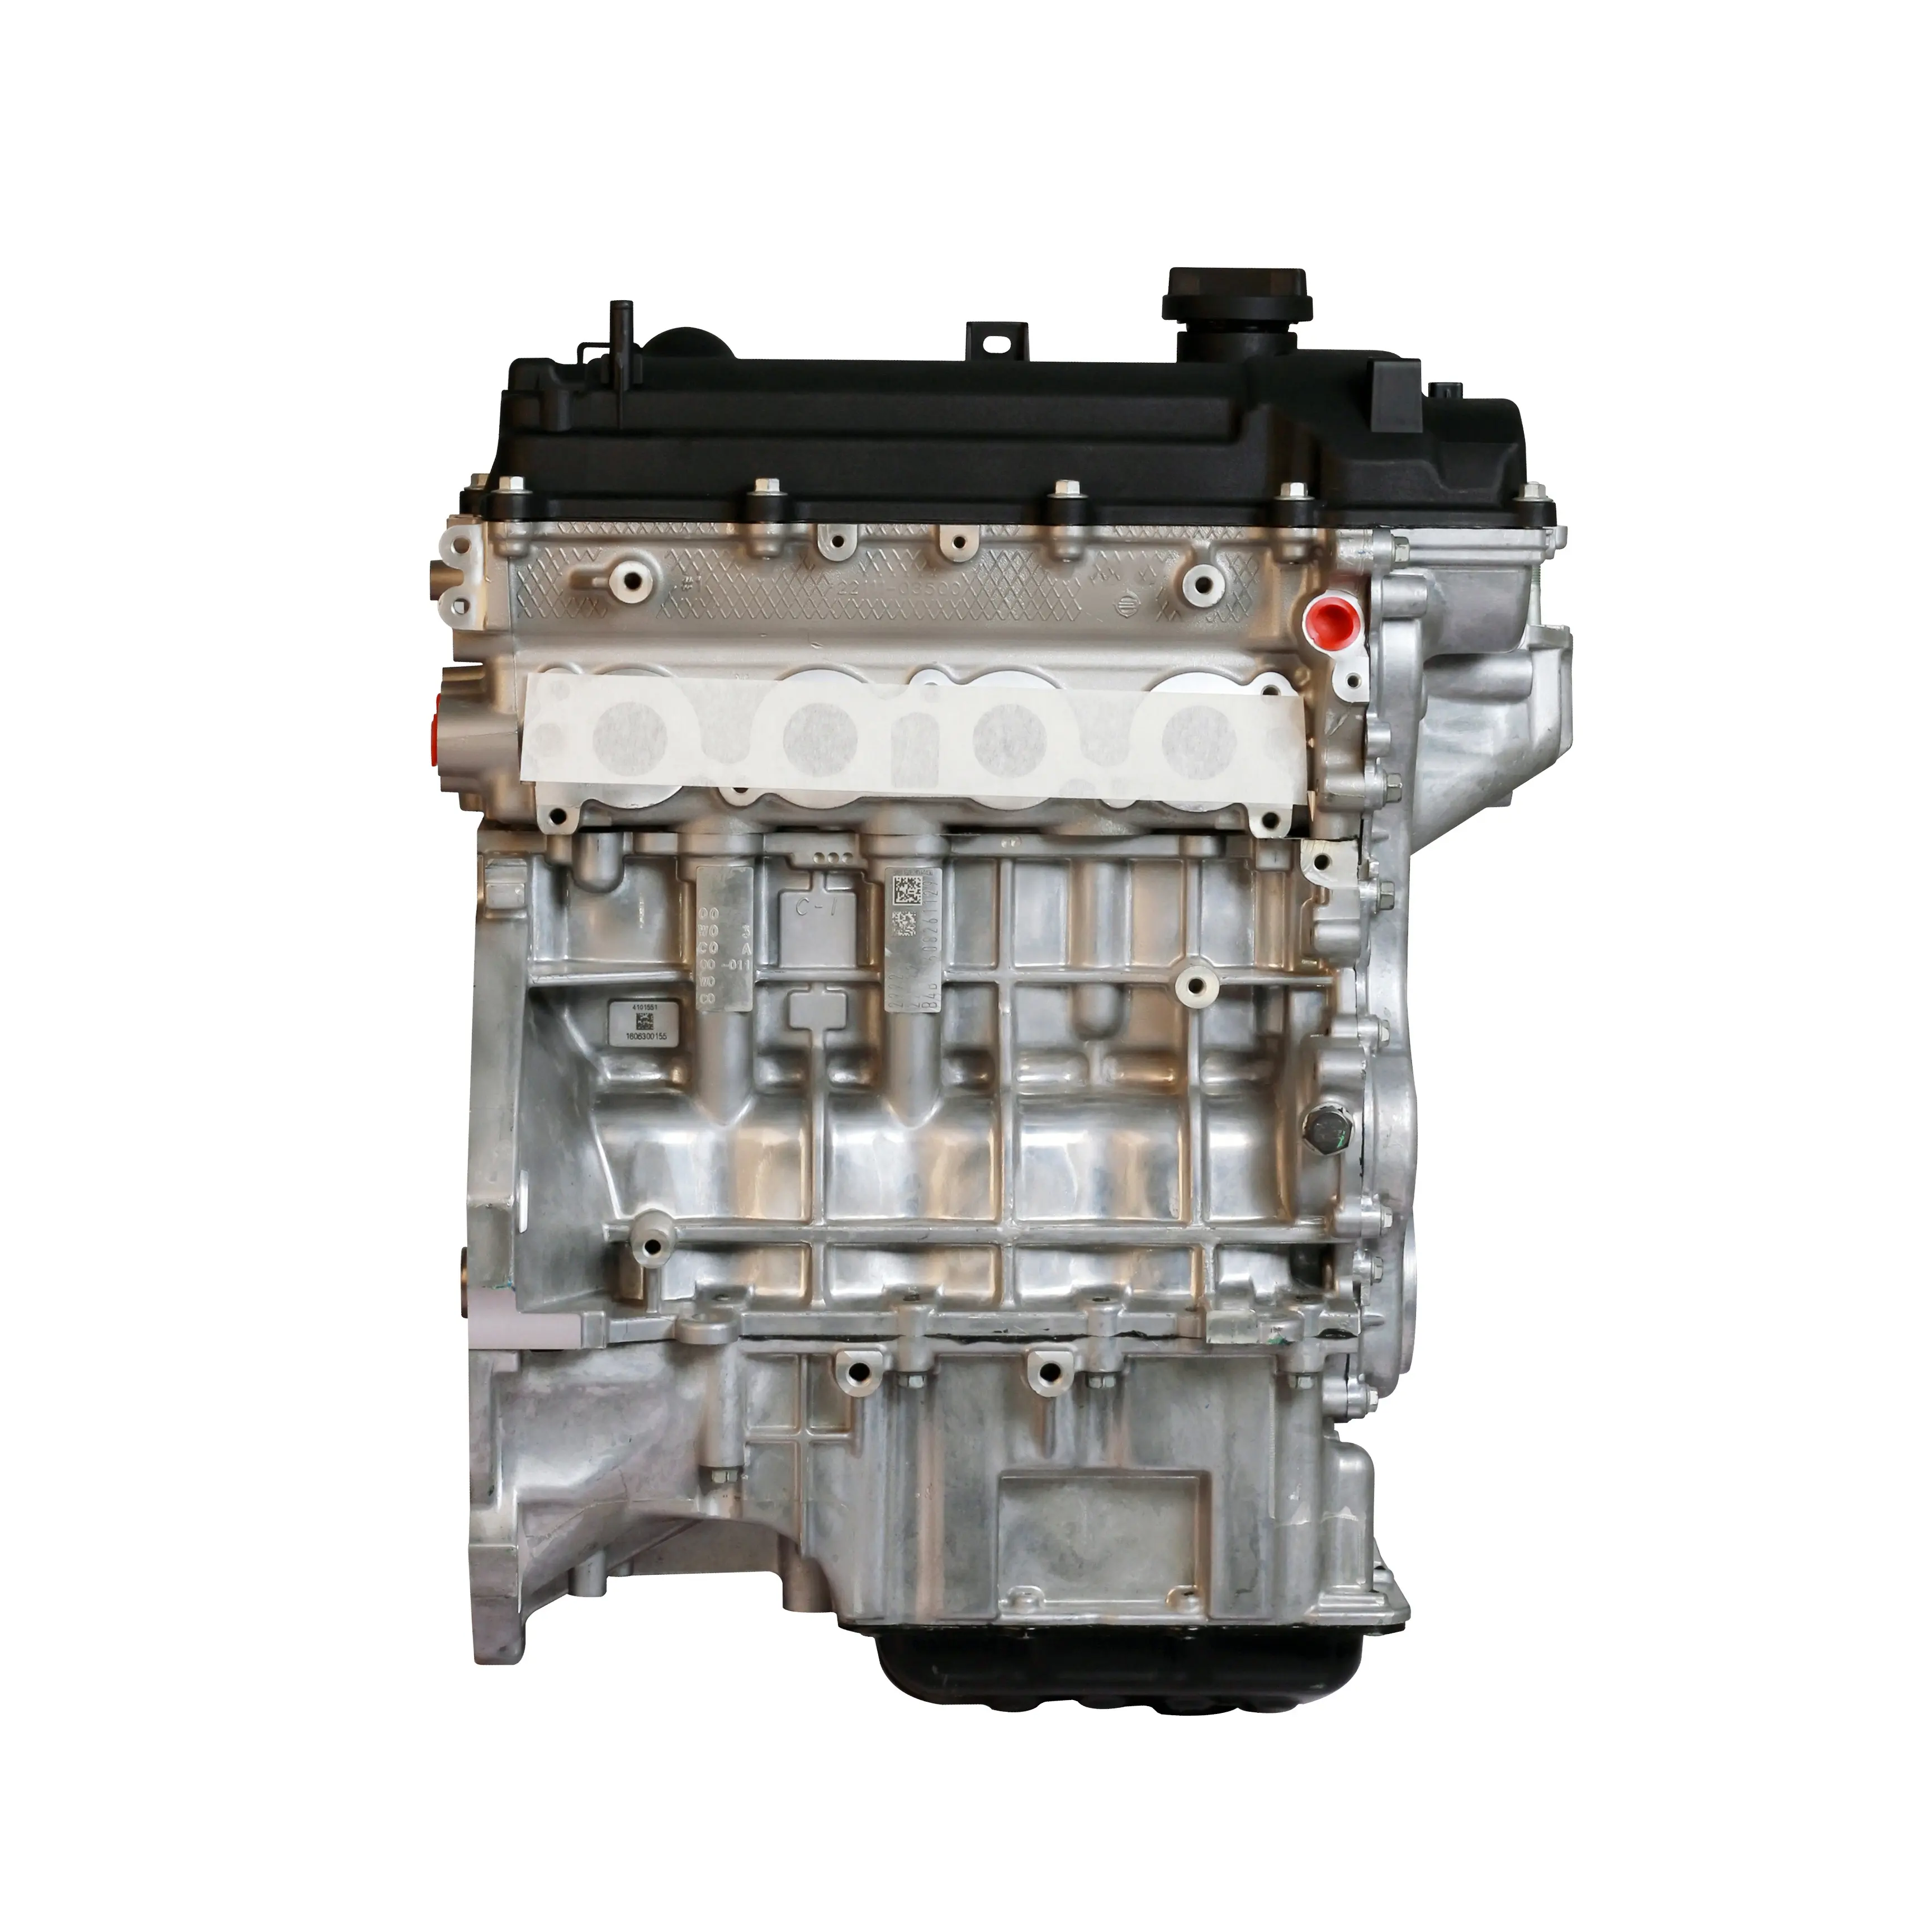 Il motore per auto coreano G4LA G4LC running-in di alta qualità è adatto per Hyundai Kia.